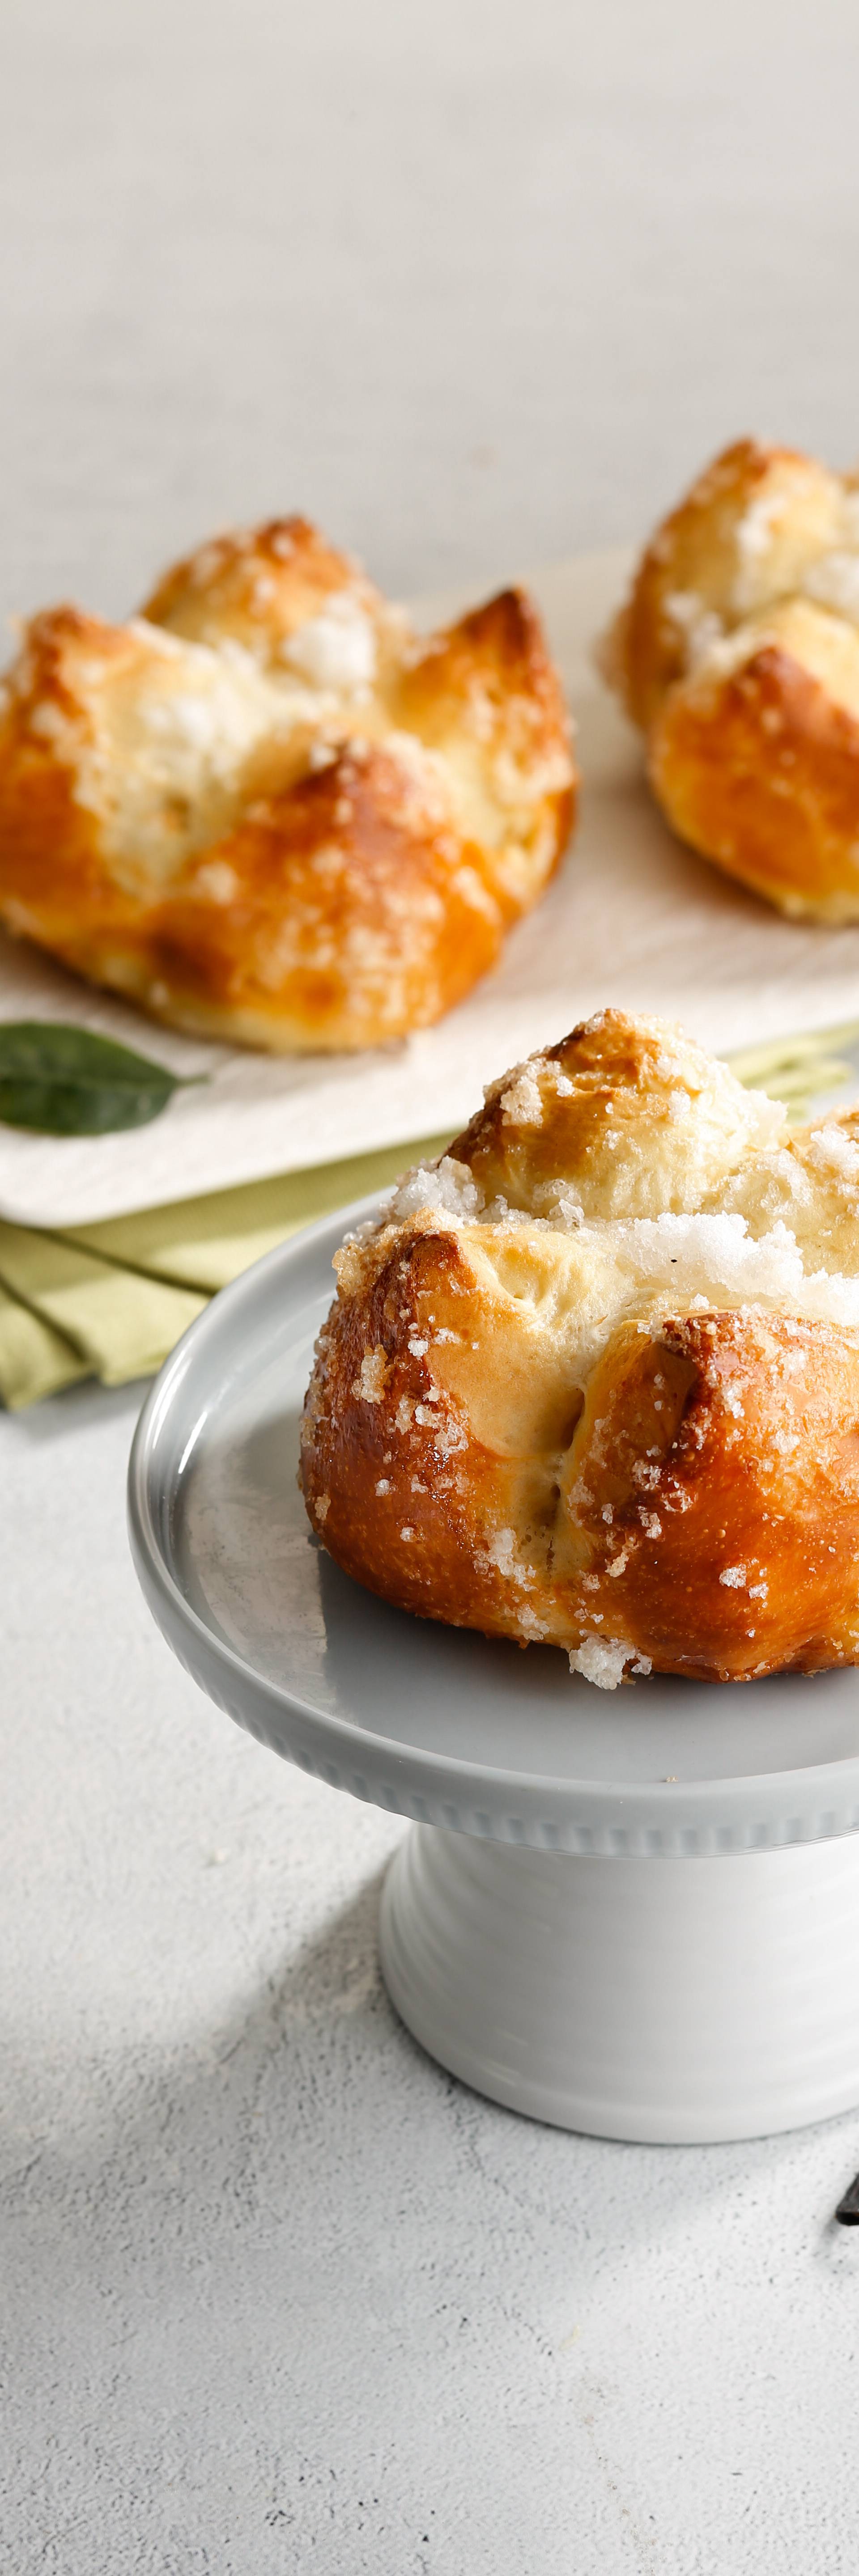 Tradicionalni dalmatinski kolač – Iz Pan-Peka stiže recept za slasnu deliciju pincu